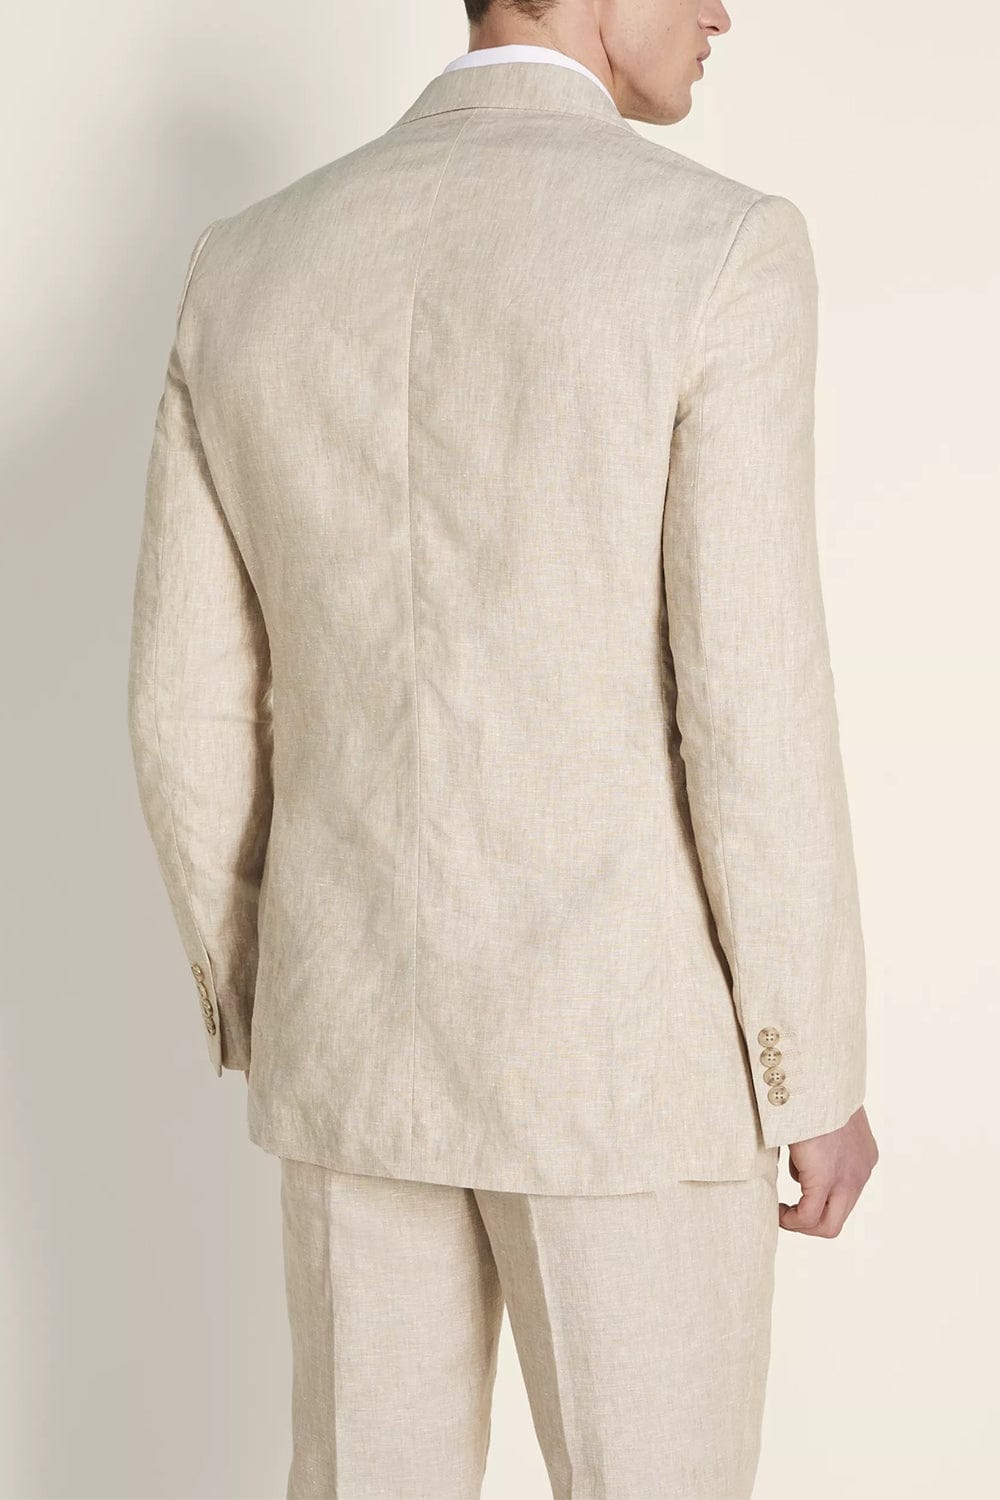 aesido Business Casual 3 Piece Notch Lapel Men's Suit (Blazer+Vest+Pants)